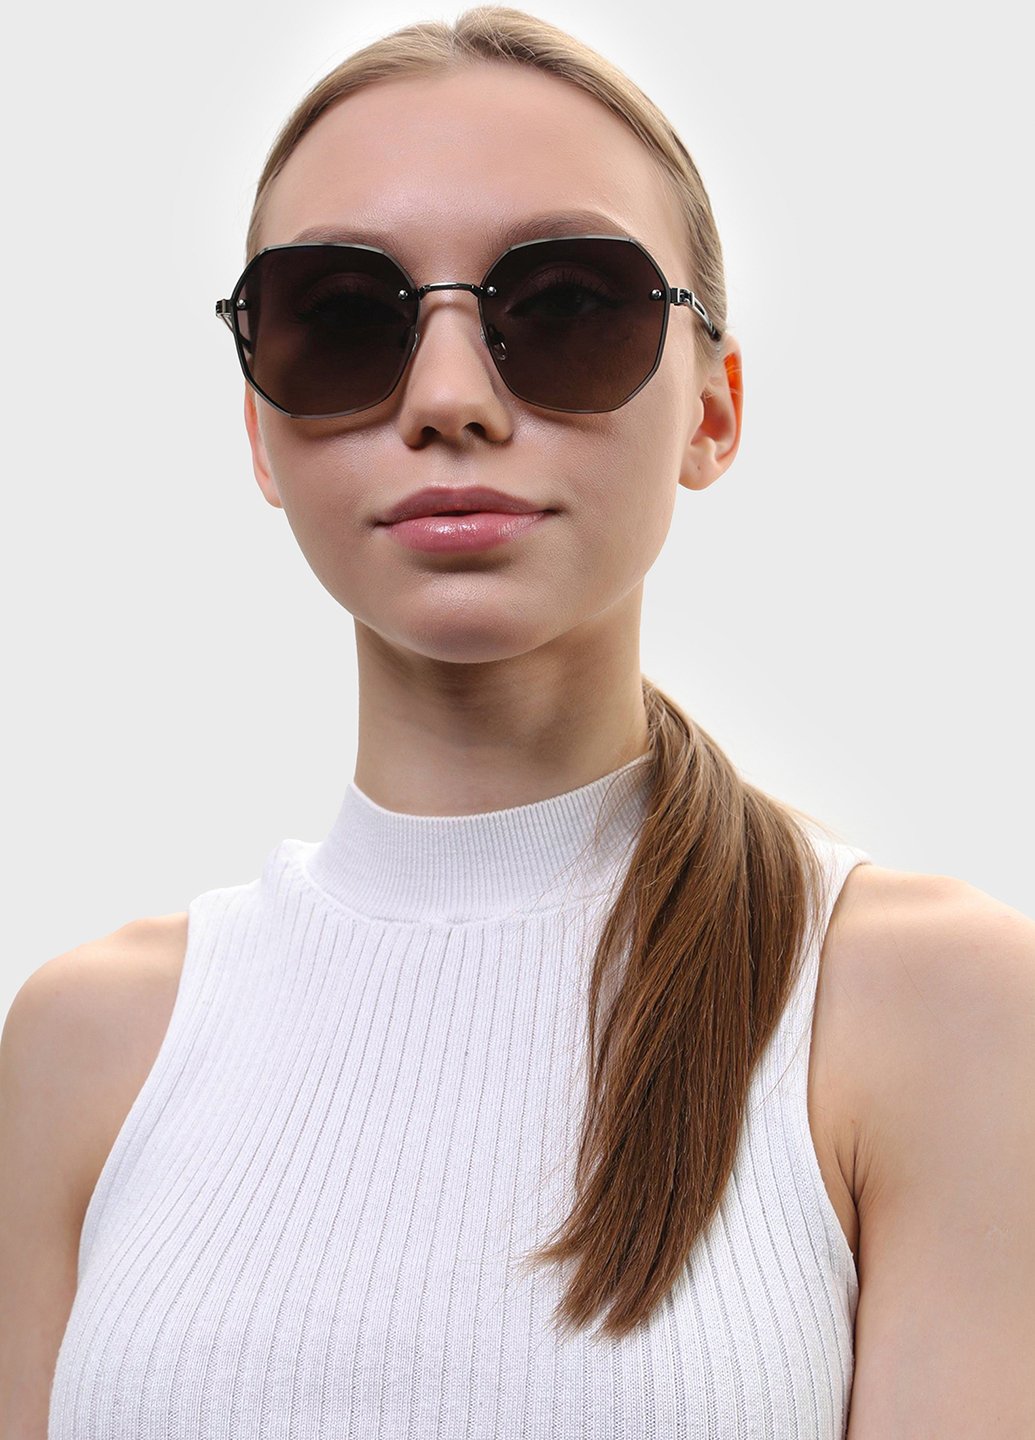 Купить Женские солнцезащитные очки Merlini с поляризацией S31817 117047 - Черный в интернет-магазине